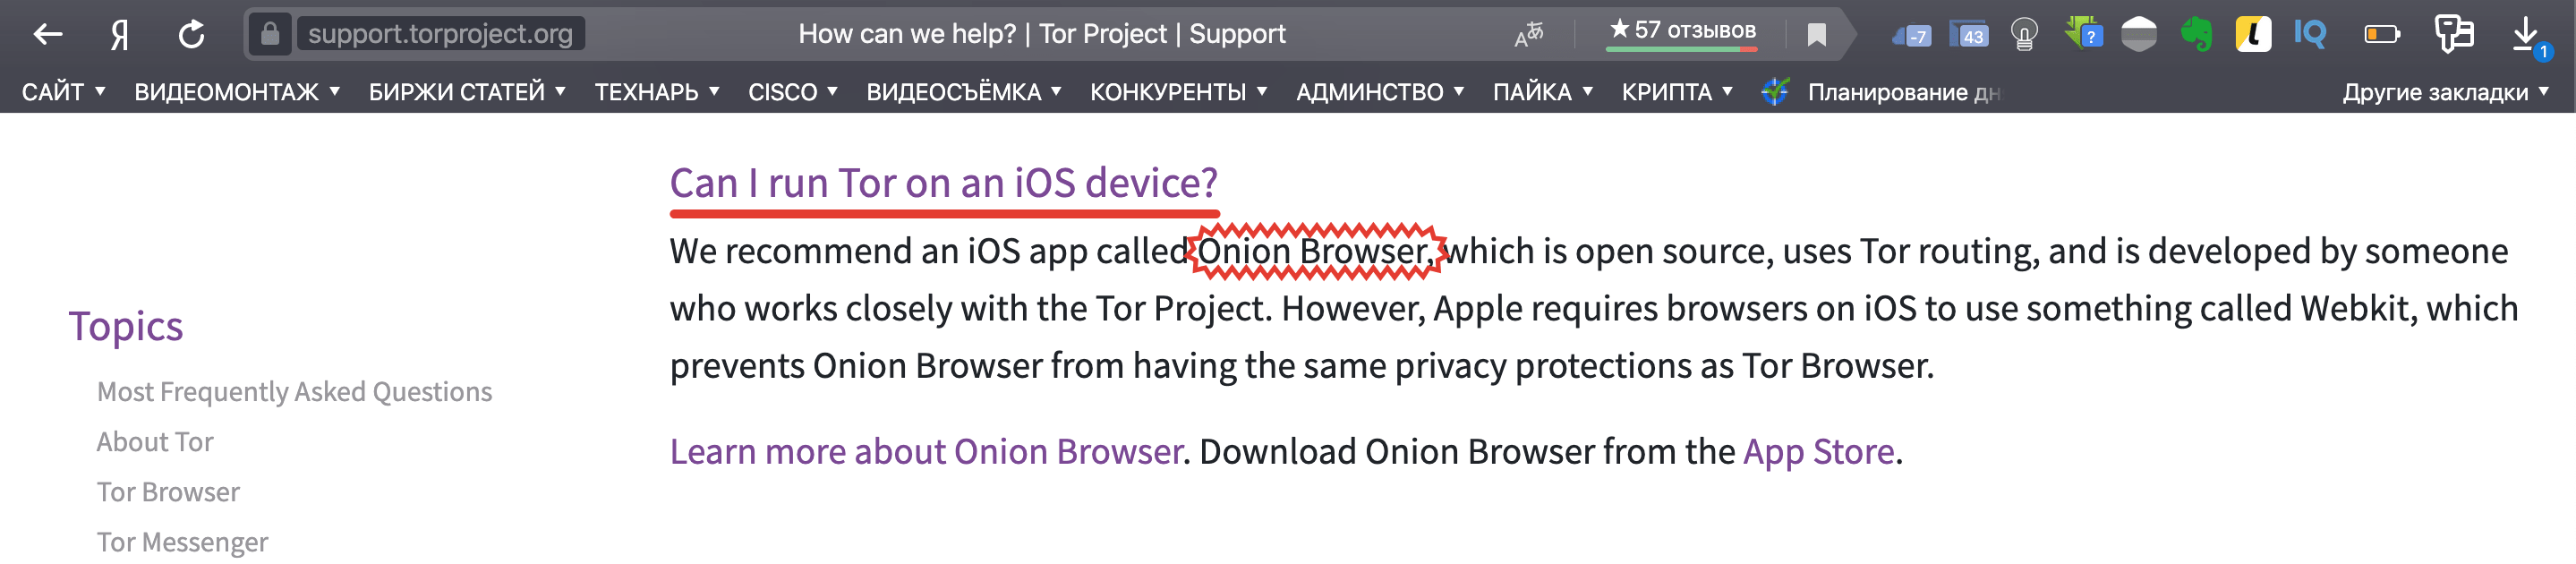 Как зайти на руторг через тор браузер даркнет скачать blacksprut для windows 10 на русском даркнет2web